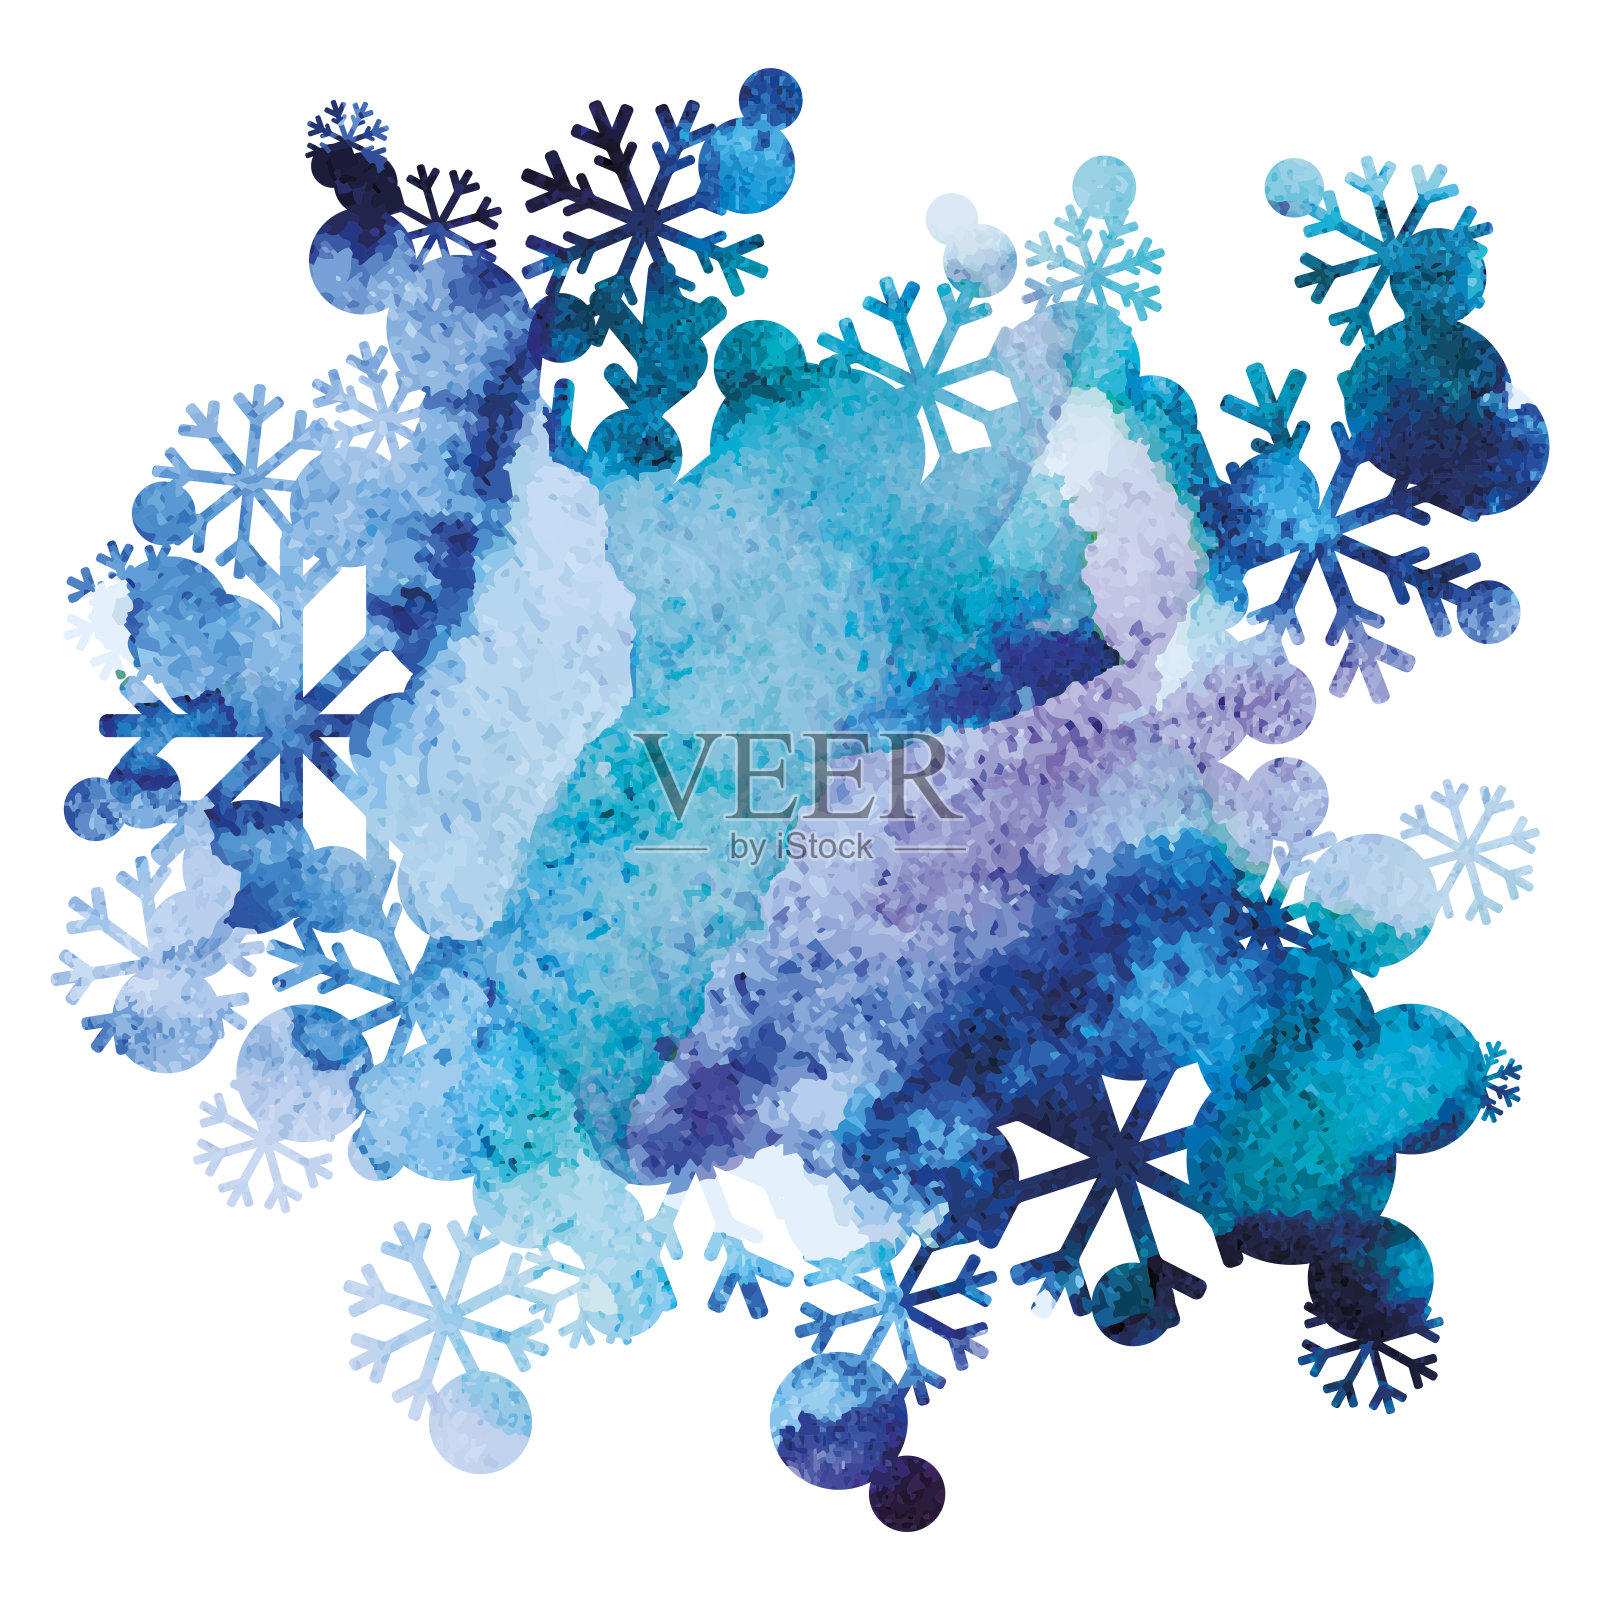 雪花束，手工绘制背景，紫色和蓝色水彩图像，抽象矢量设计艺术设计元素图片